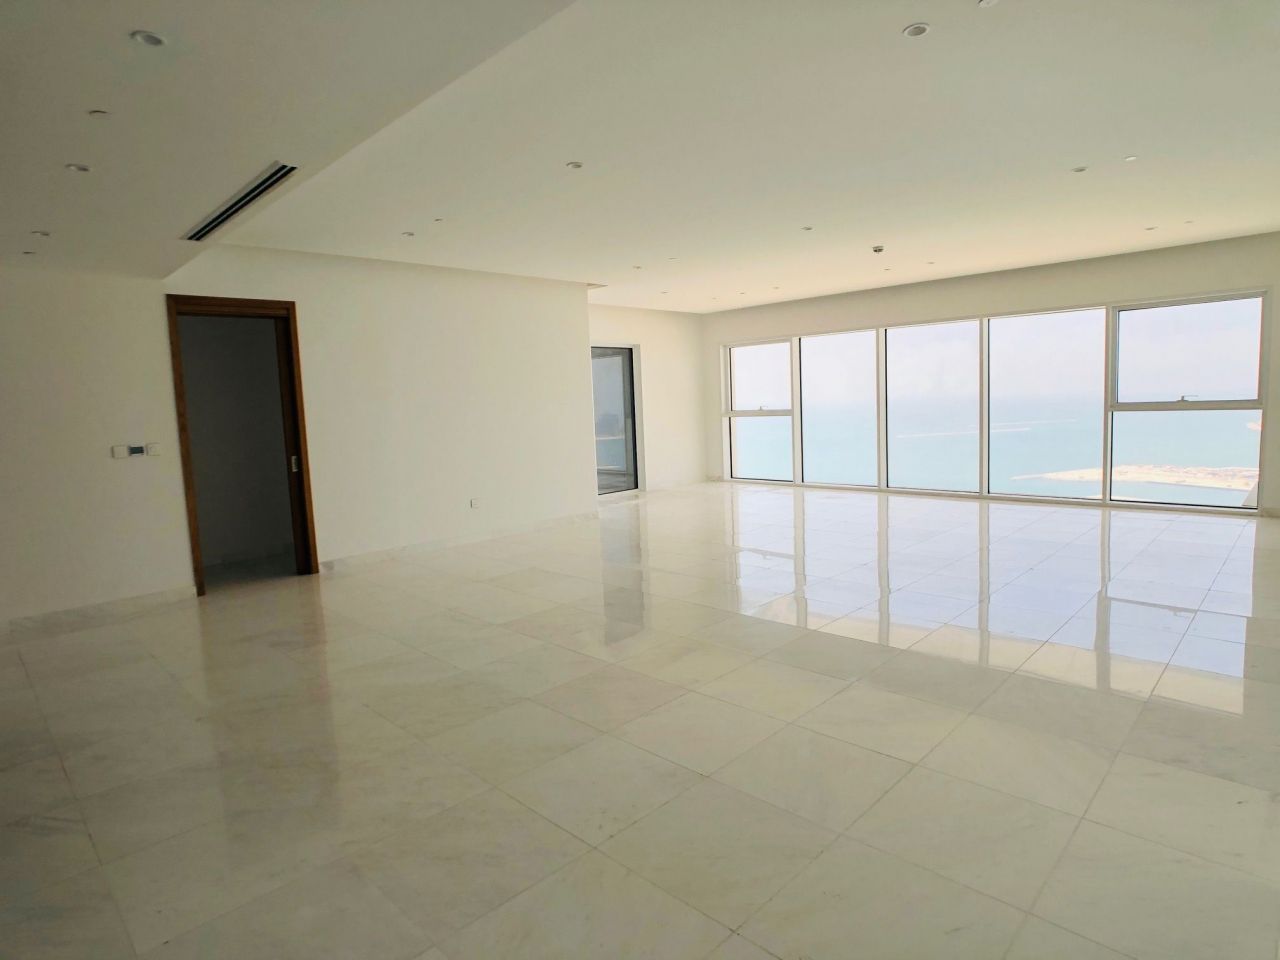 Apartment in Dubai, UAE, 311 sq.m - picture 1